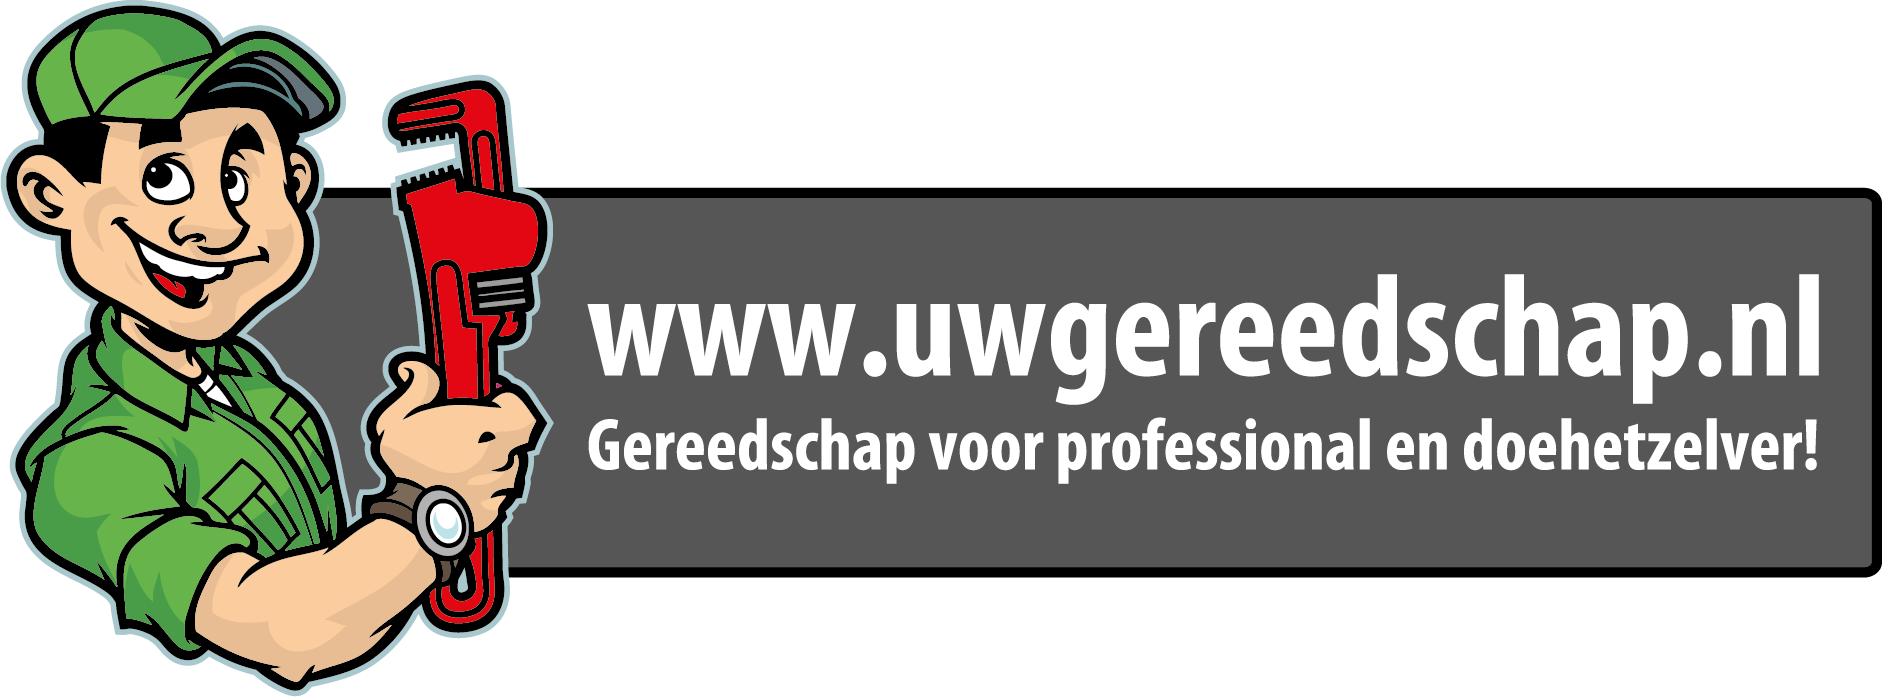 Drijvende kracht Neerwaarts schattig Uwgereedschap.nl | Reviews en ervaringen Uwgereedschap.nl -  feedbackcompany.com